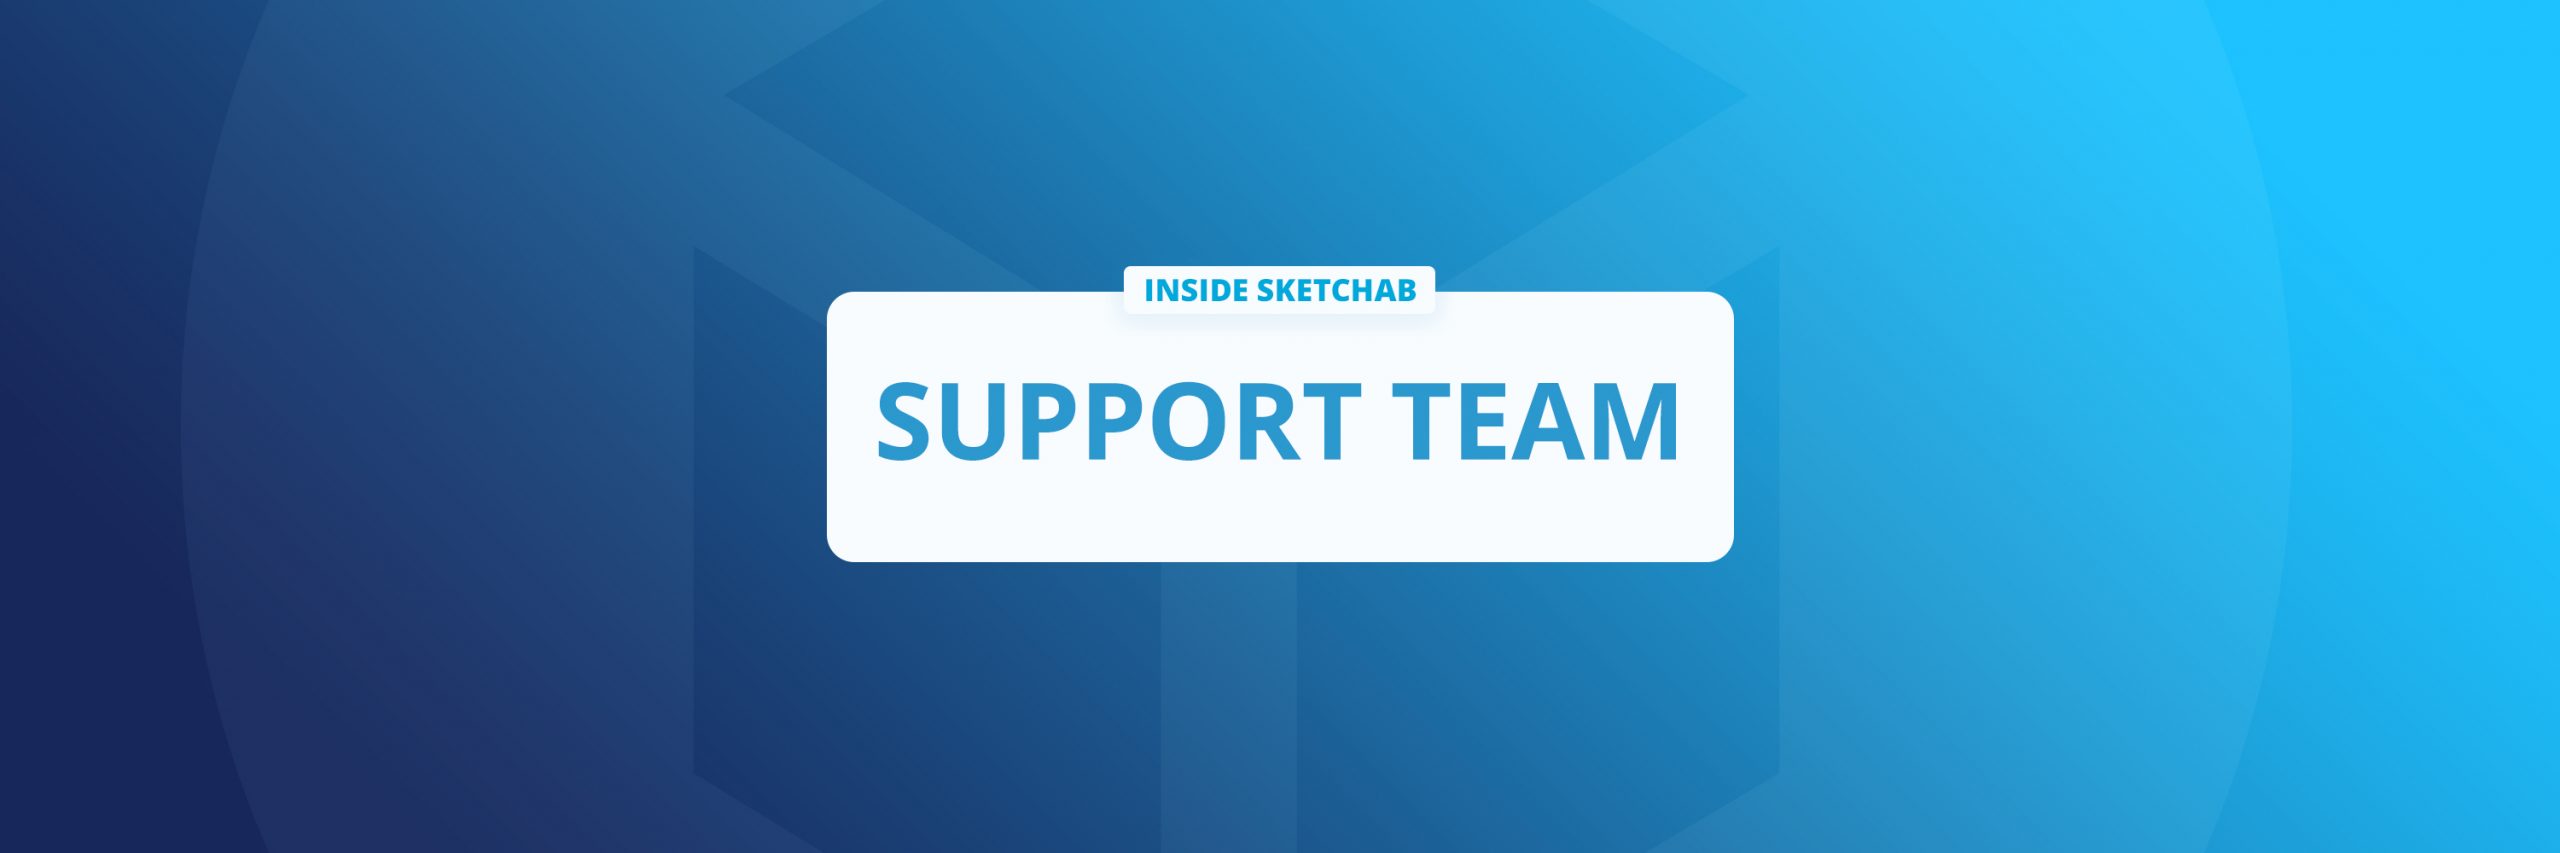 sketchfab support team